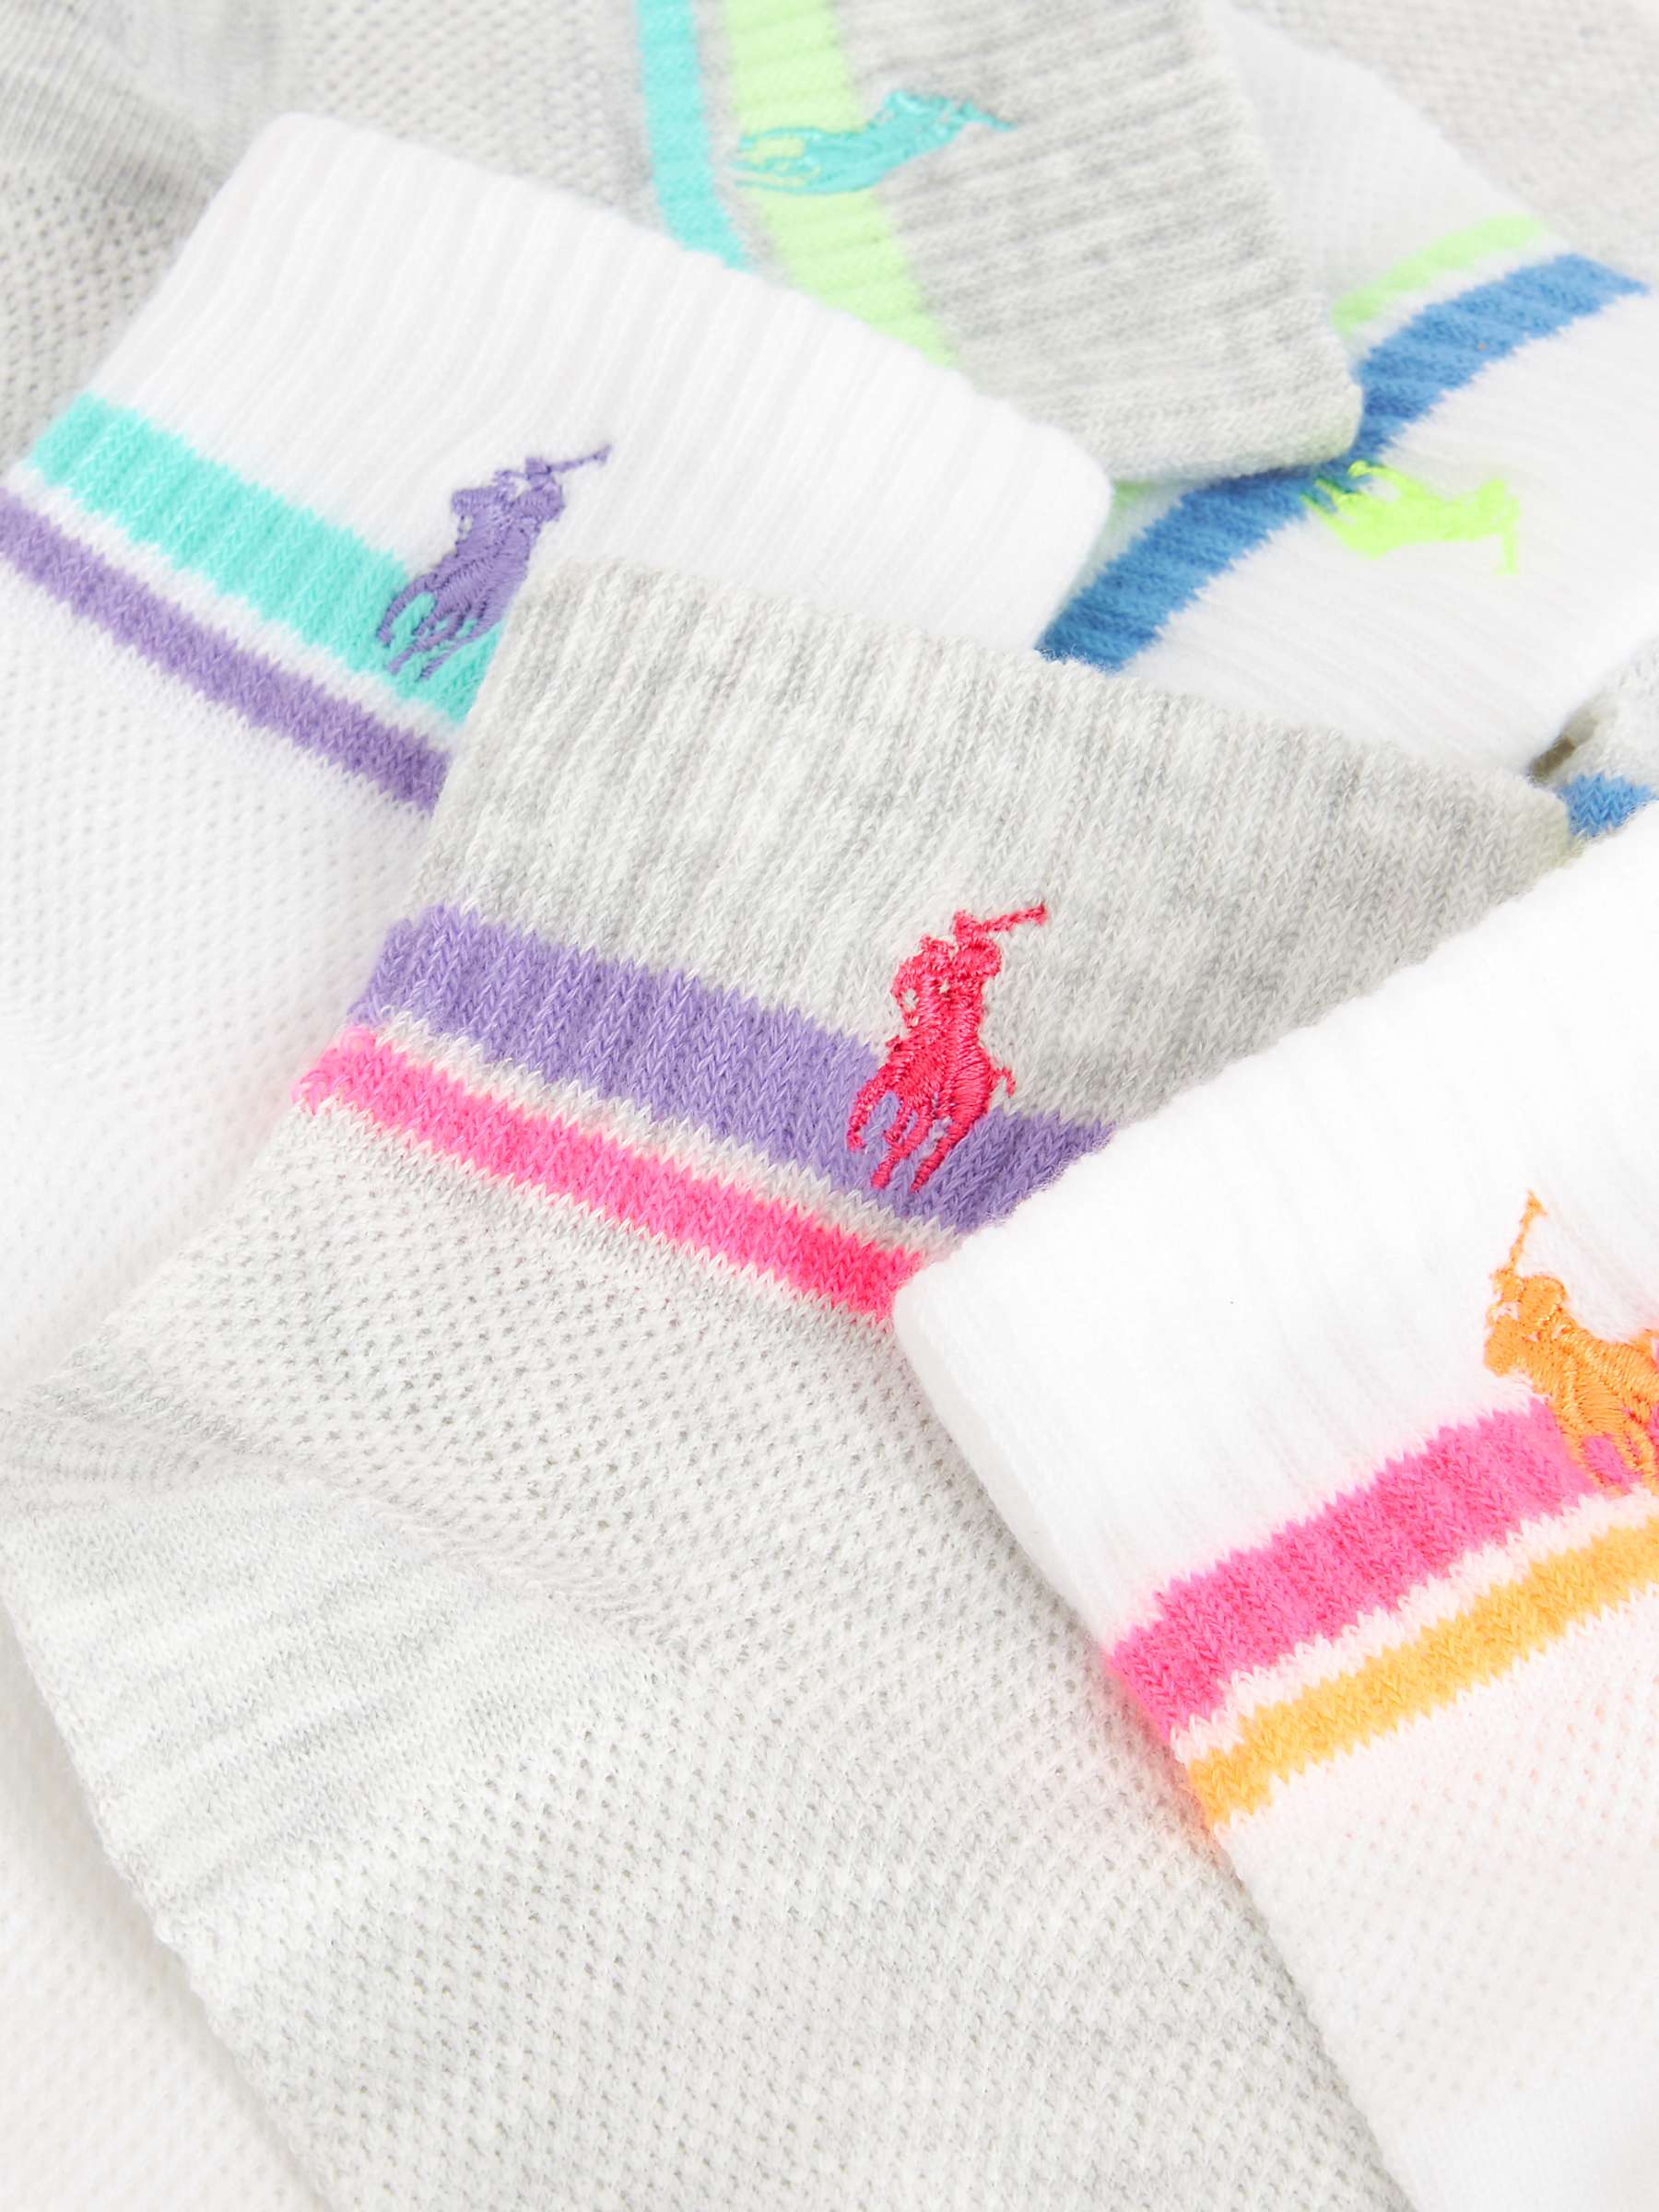 Buy Ralph Lauren Open Mesh Double Stripe Ankle Socks, Pack of 6, White/Multi Online at johnlewis.com